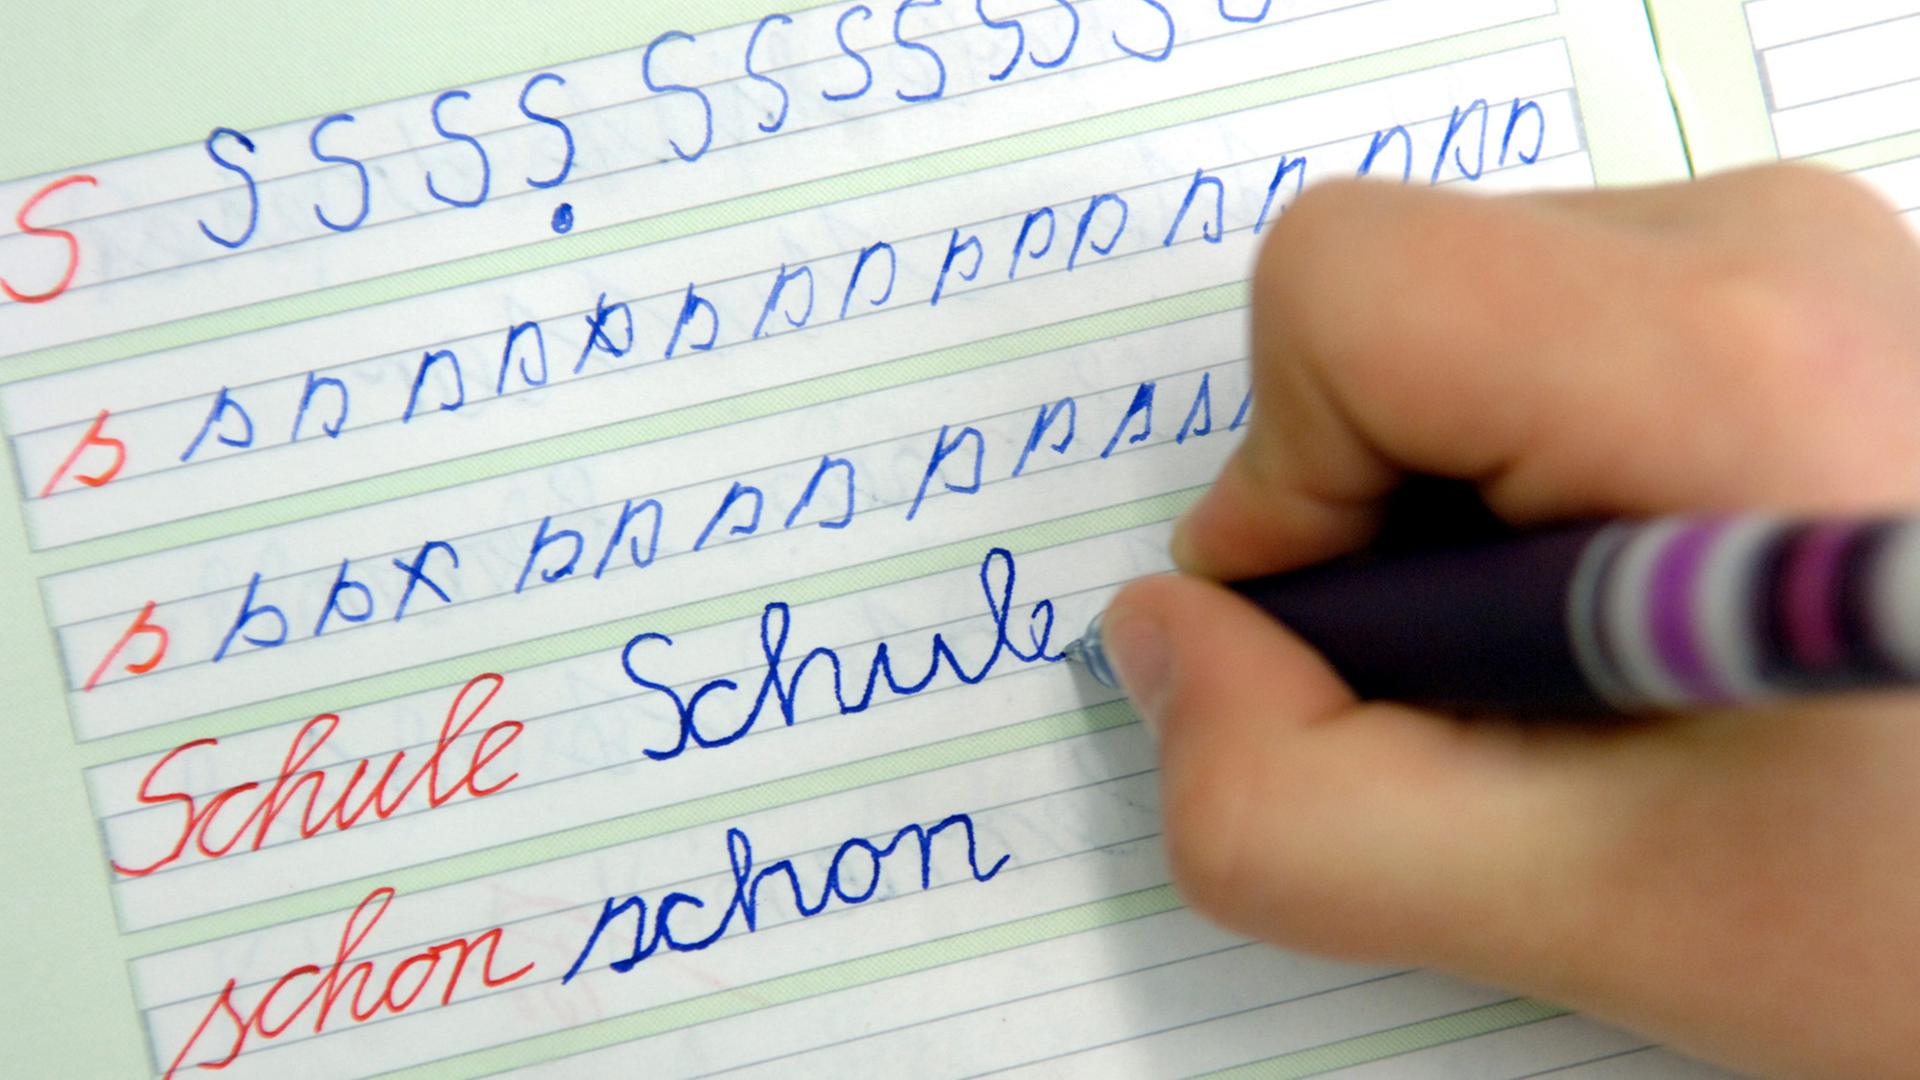 Ein Mädchen schreibt im Unterricht das Wort "Schule" in ihr Heft.